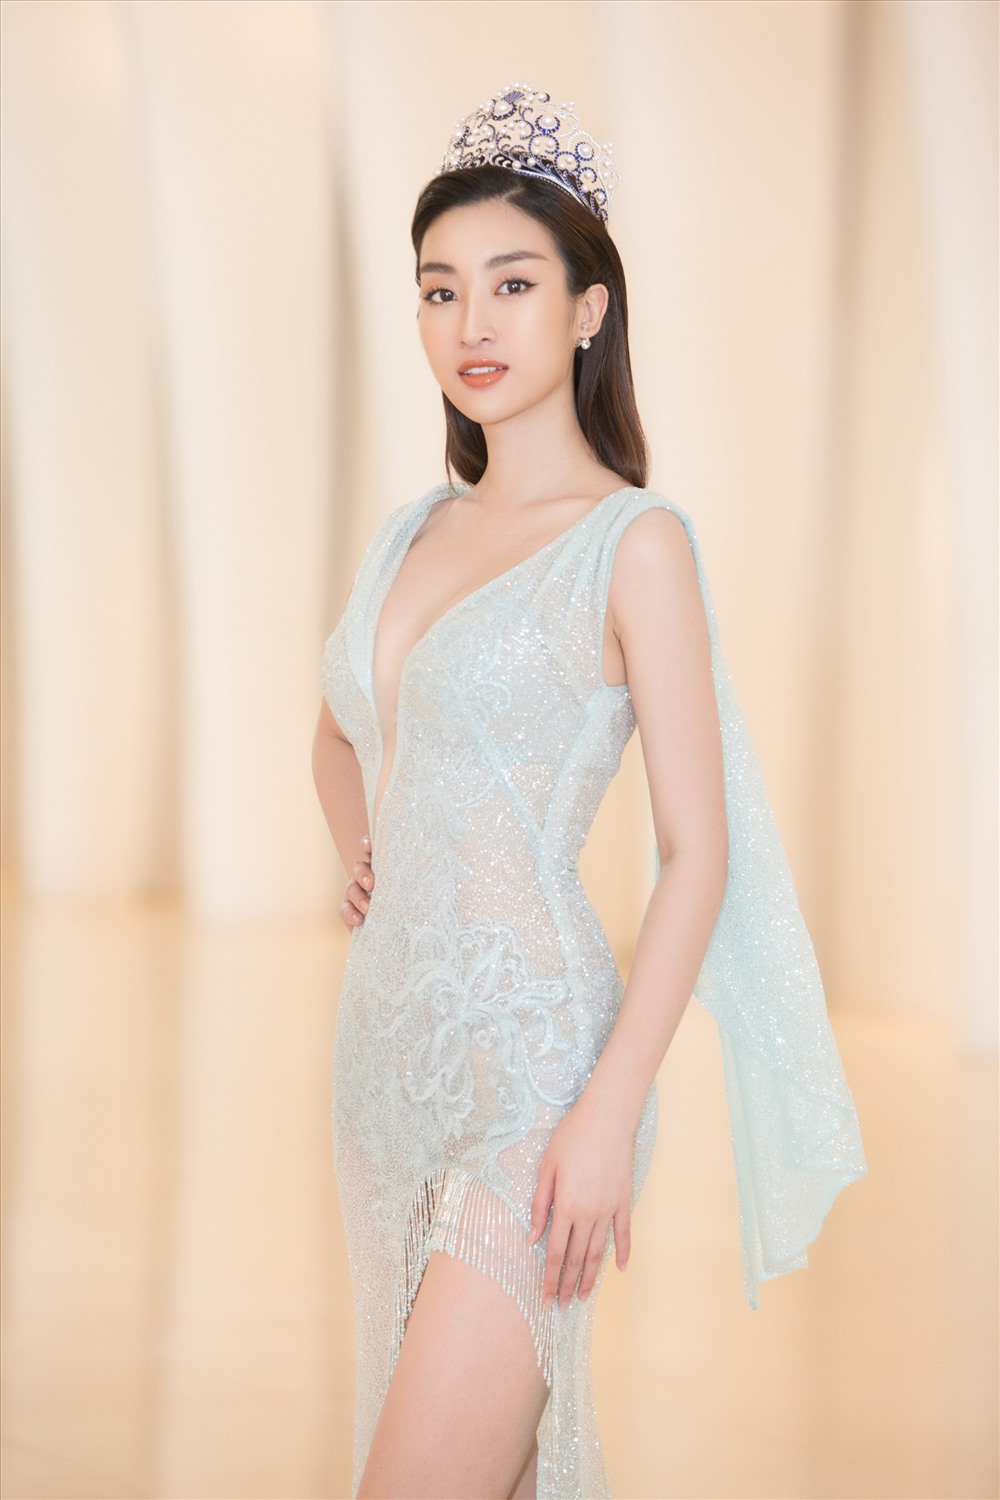 Đỗ Mỹ Linh từng giành giải Hoa hậu Nhân ái tại Miss World 2017. Cô kì vọng tìm được ứng viên tiếp theo đưa nhan sắc Việt vươn tầm thế giới. 